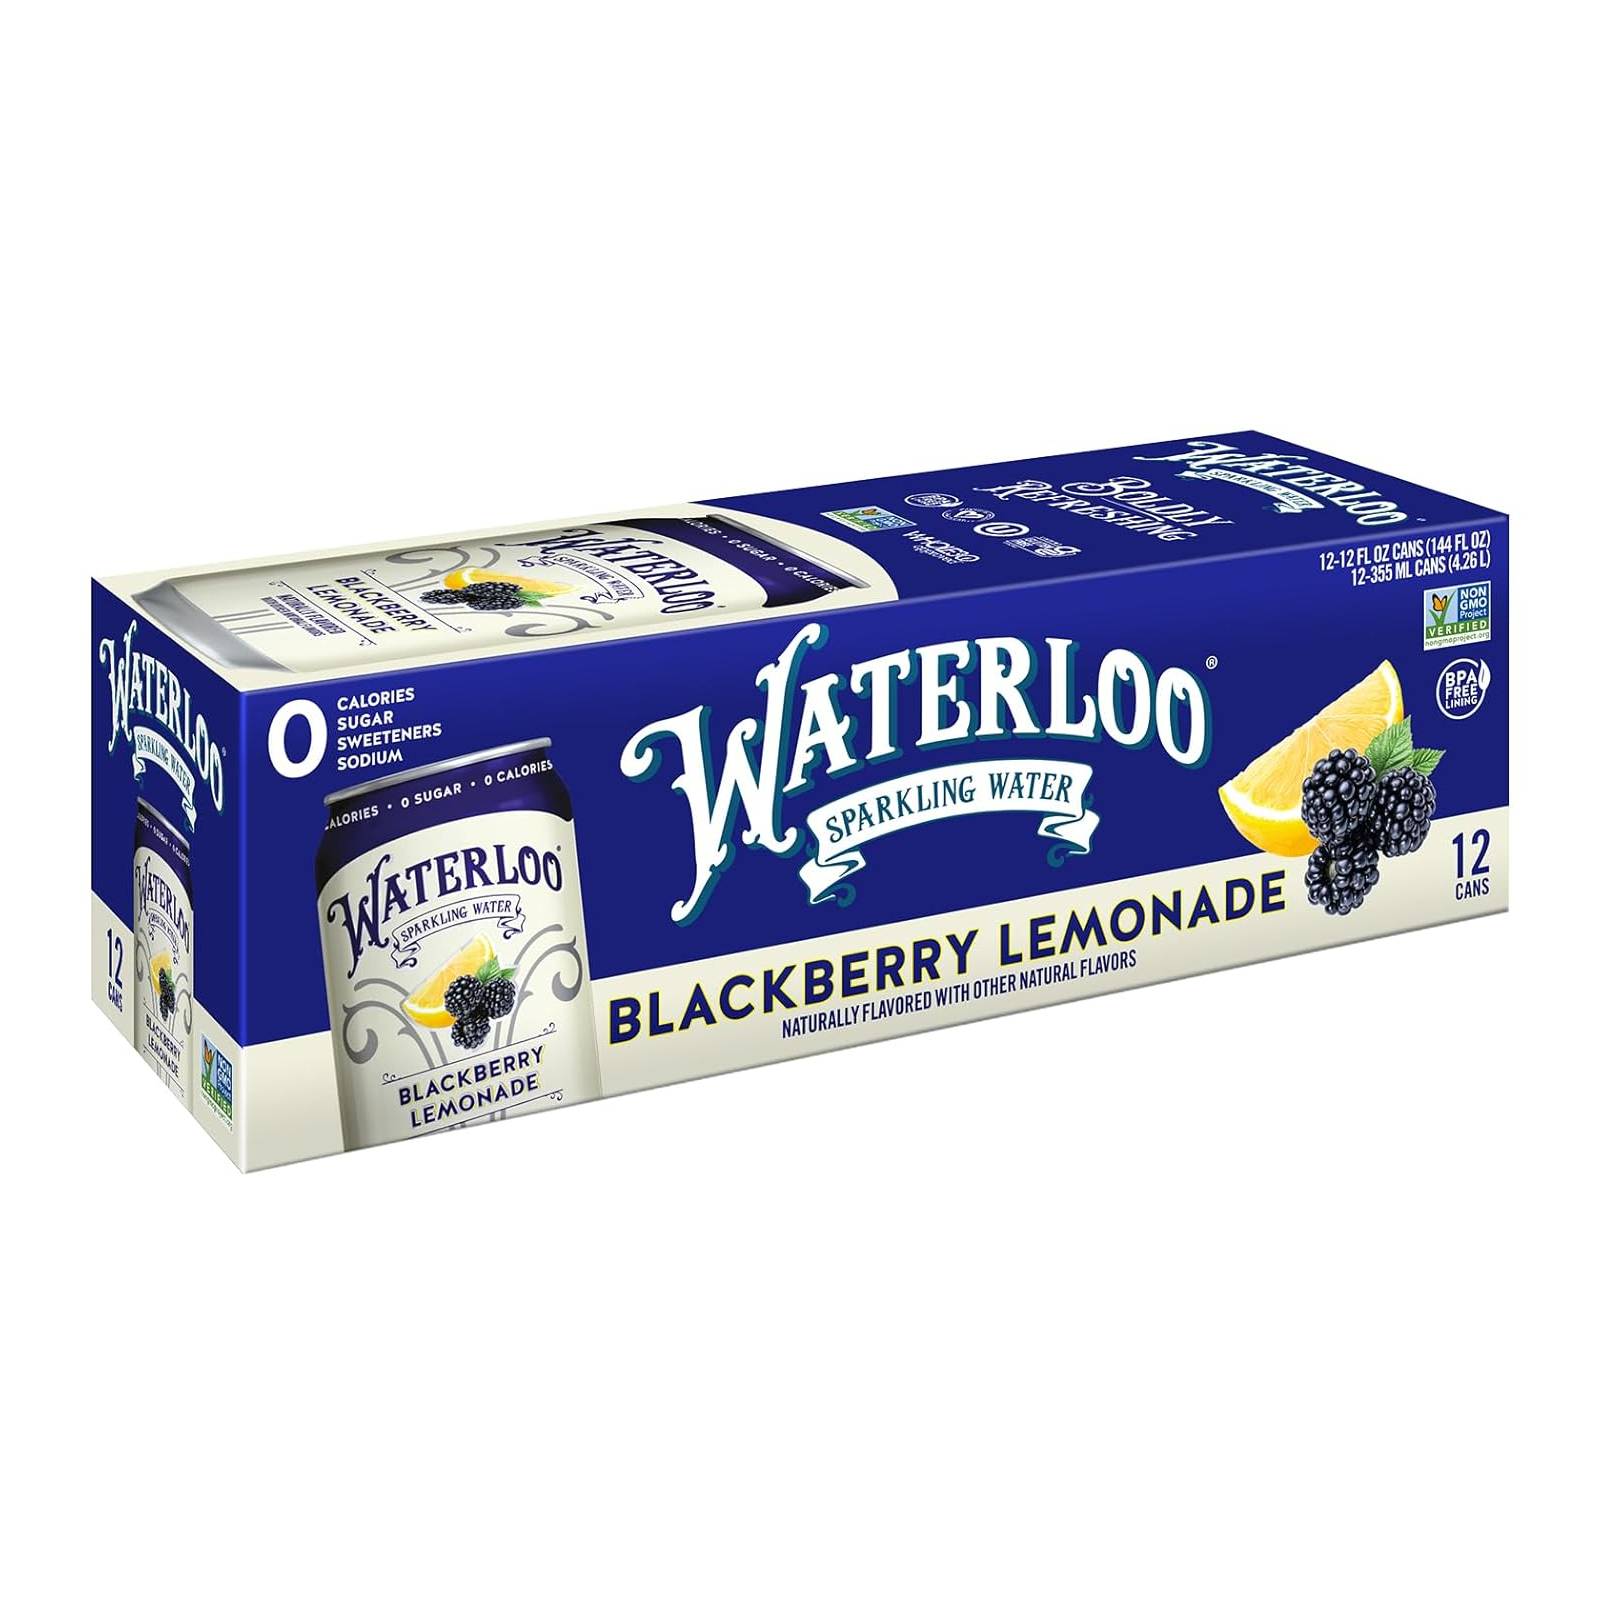 Waterloo Sparkling Water Blackberry Lemonade / 144 fl. oz